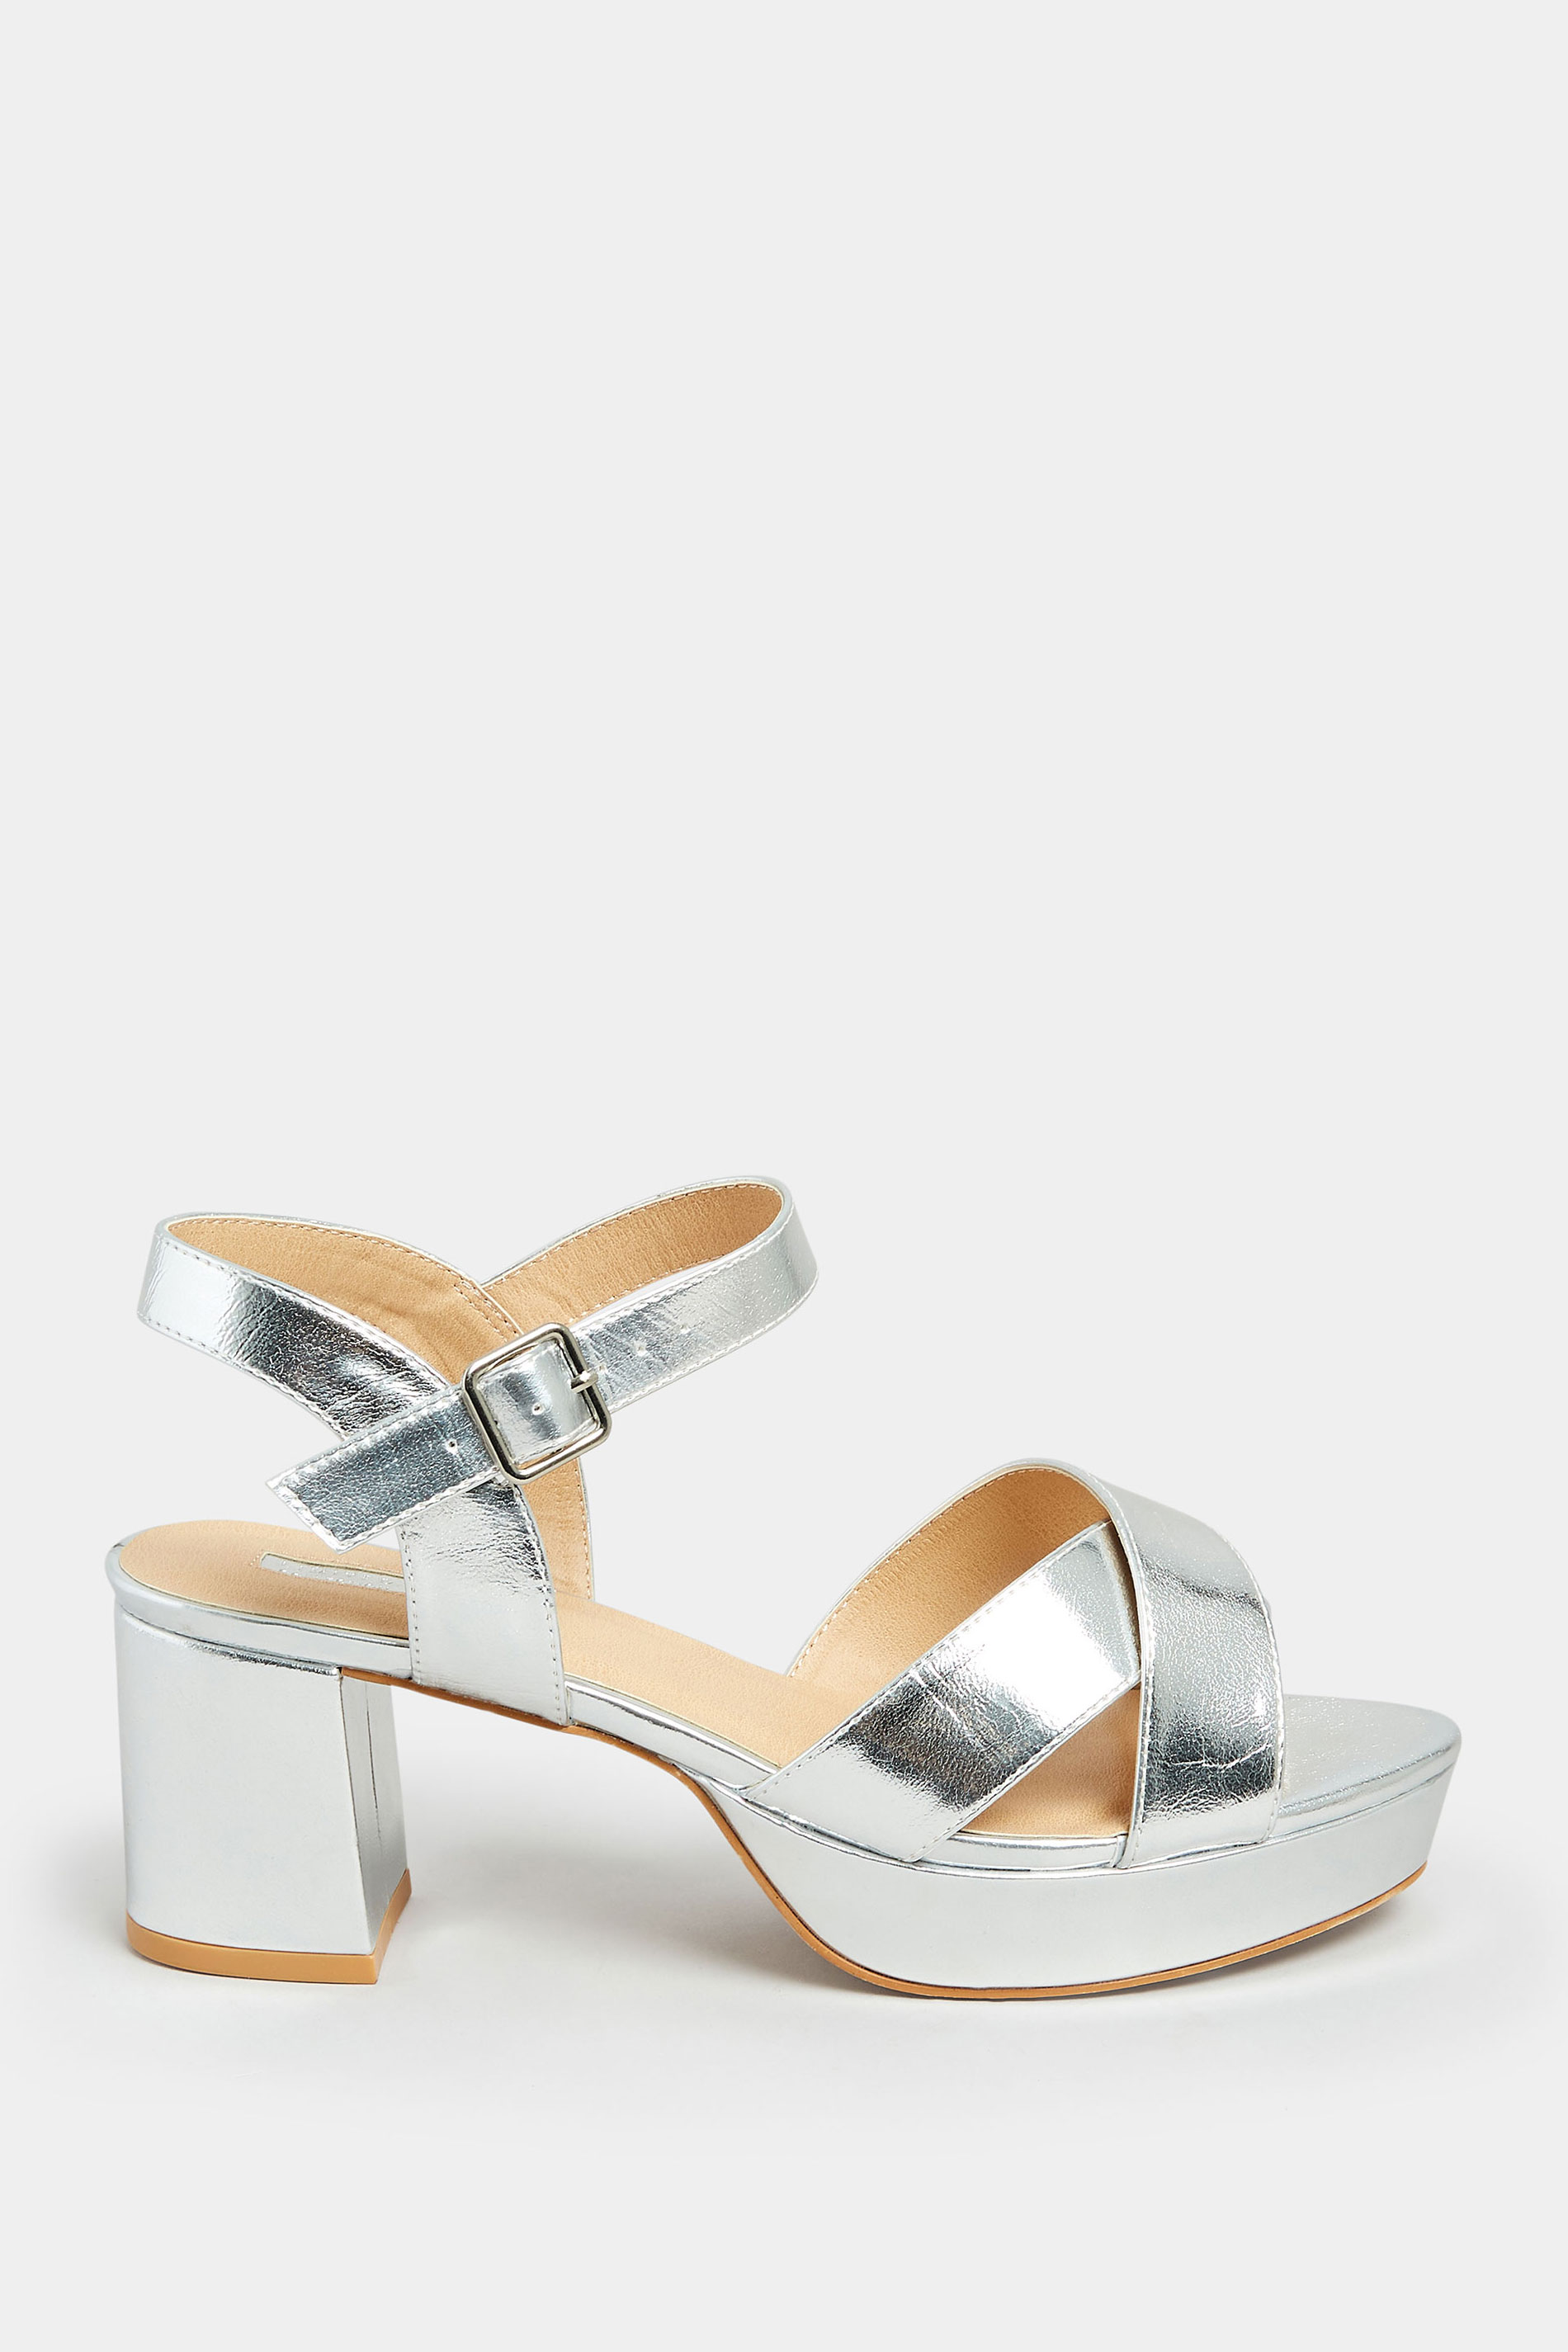 Silver Platform Sandals - Sandal Design